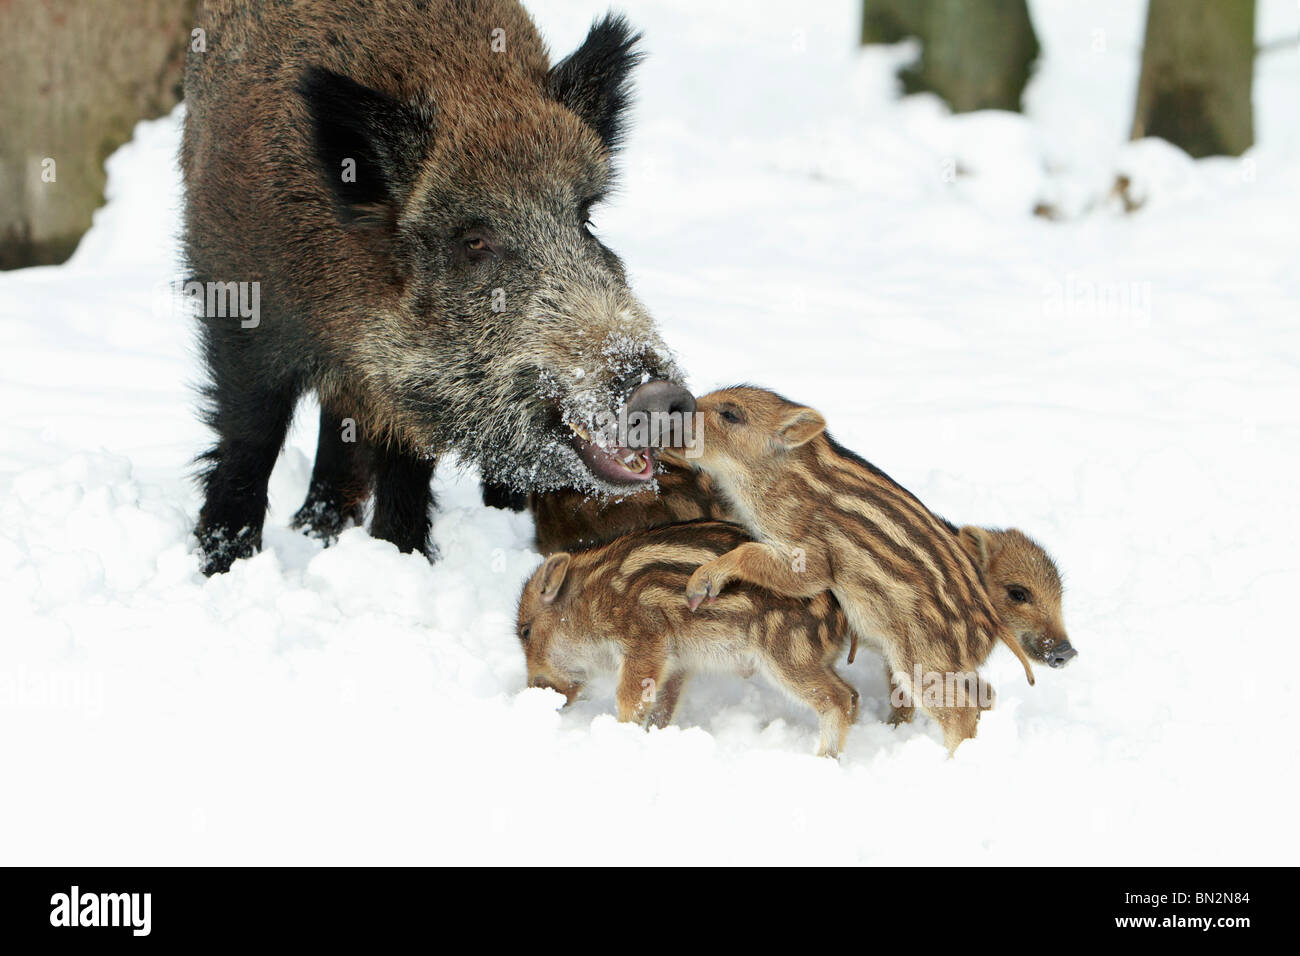 Européen de porc ou de sanglier (Sus scrofa) semer avec porcelets, hiver, Allemagne Banque D'Images